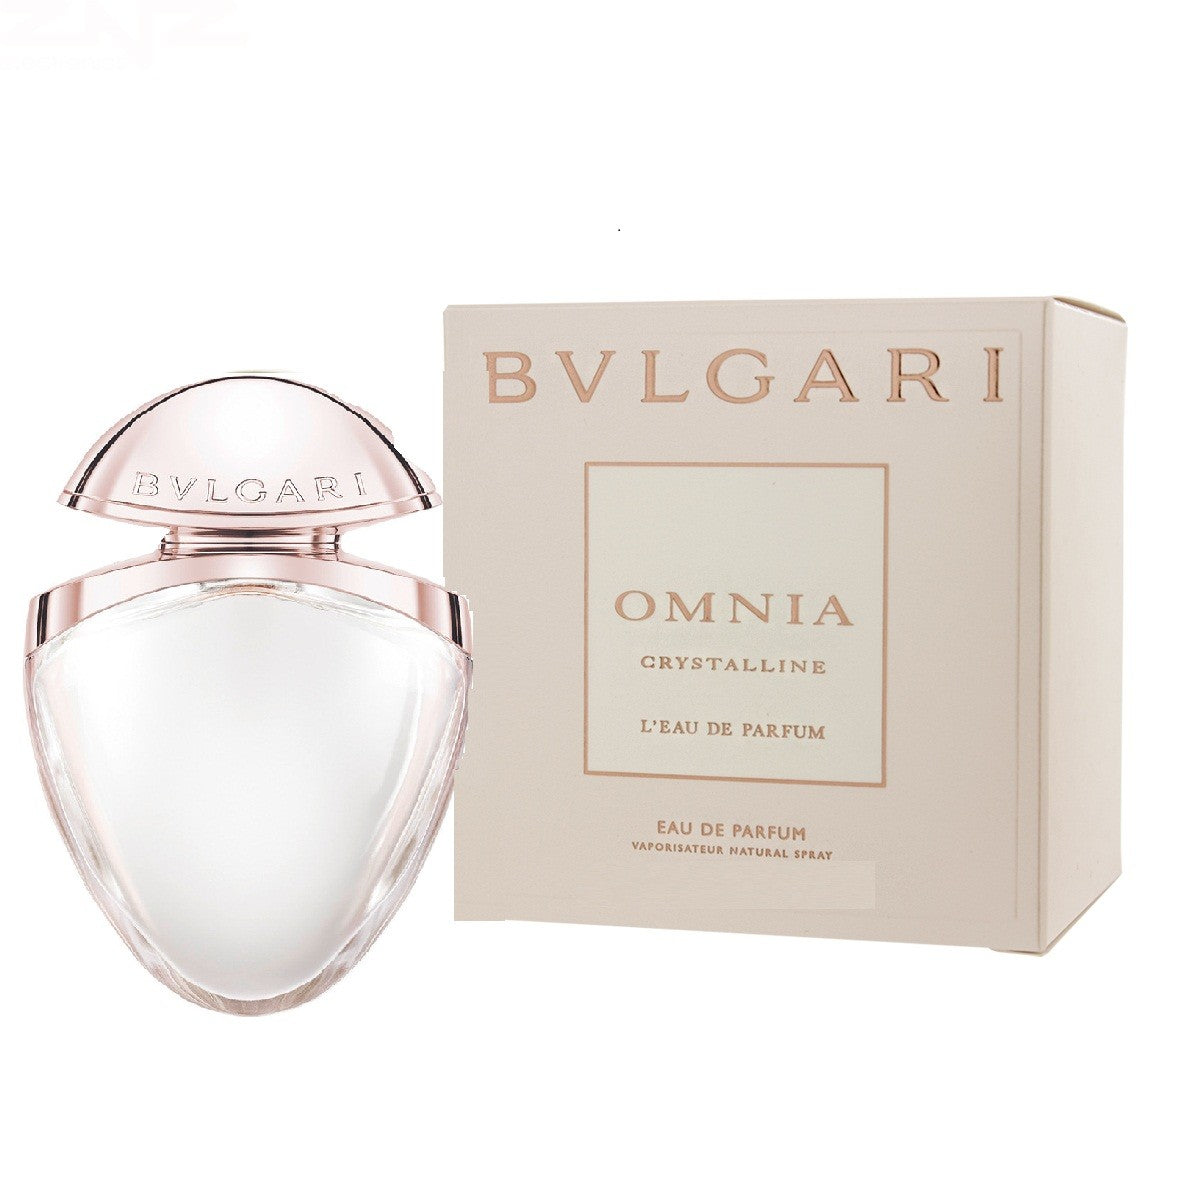 bvlgari perfume 15ml